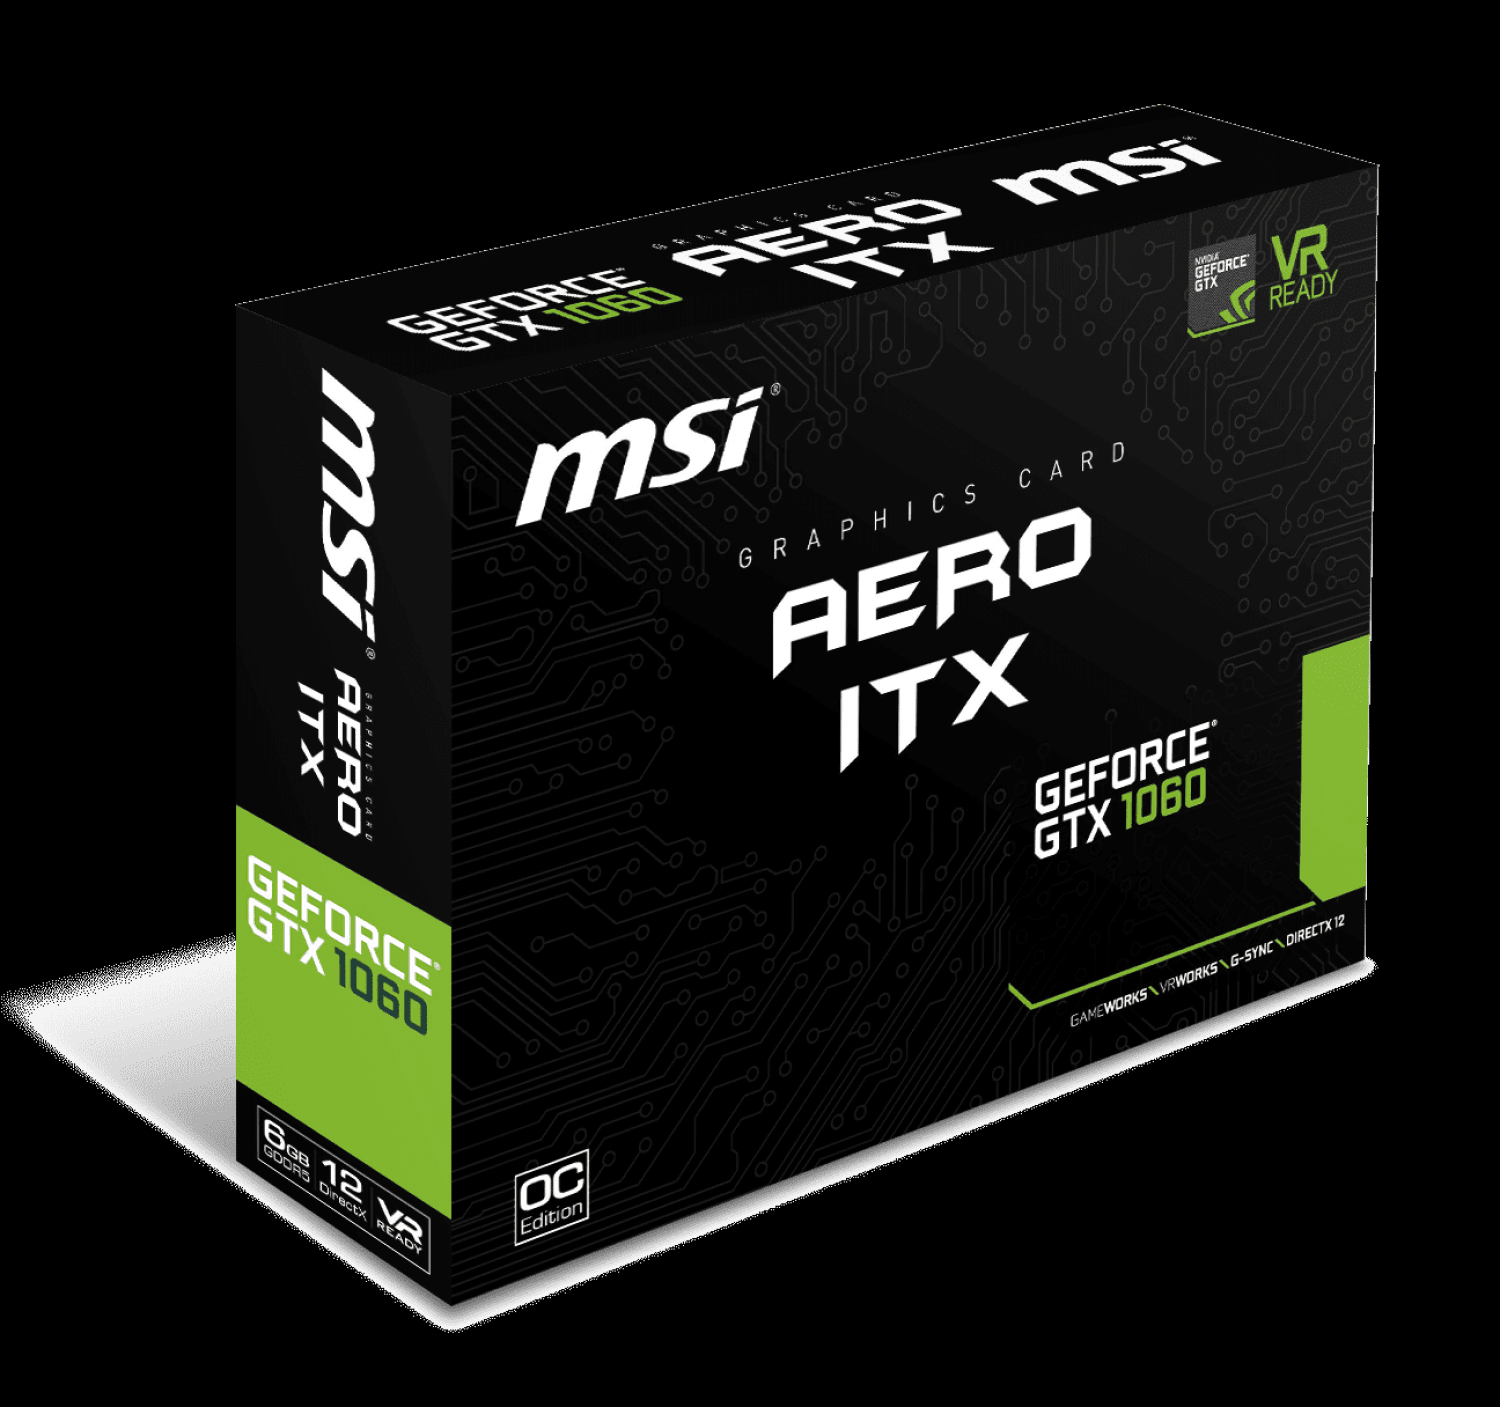 Видеокарта MSI GeForce GTX 1060 6GB GDDR5 Aero ITX OC  (GF_GTX_1060_AERO_ITX_6G_OC) – купить в Киеве | цена и отзывы в MOYO